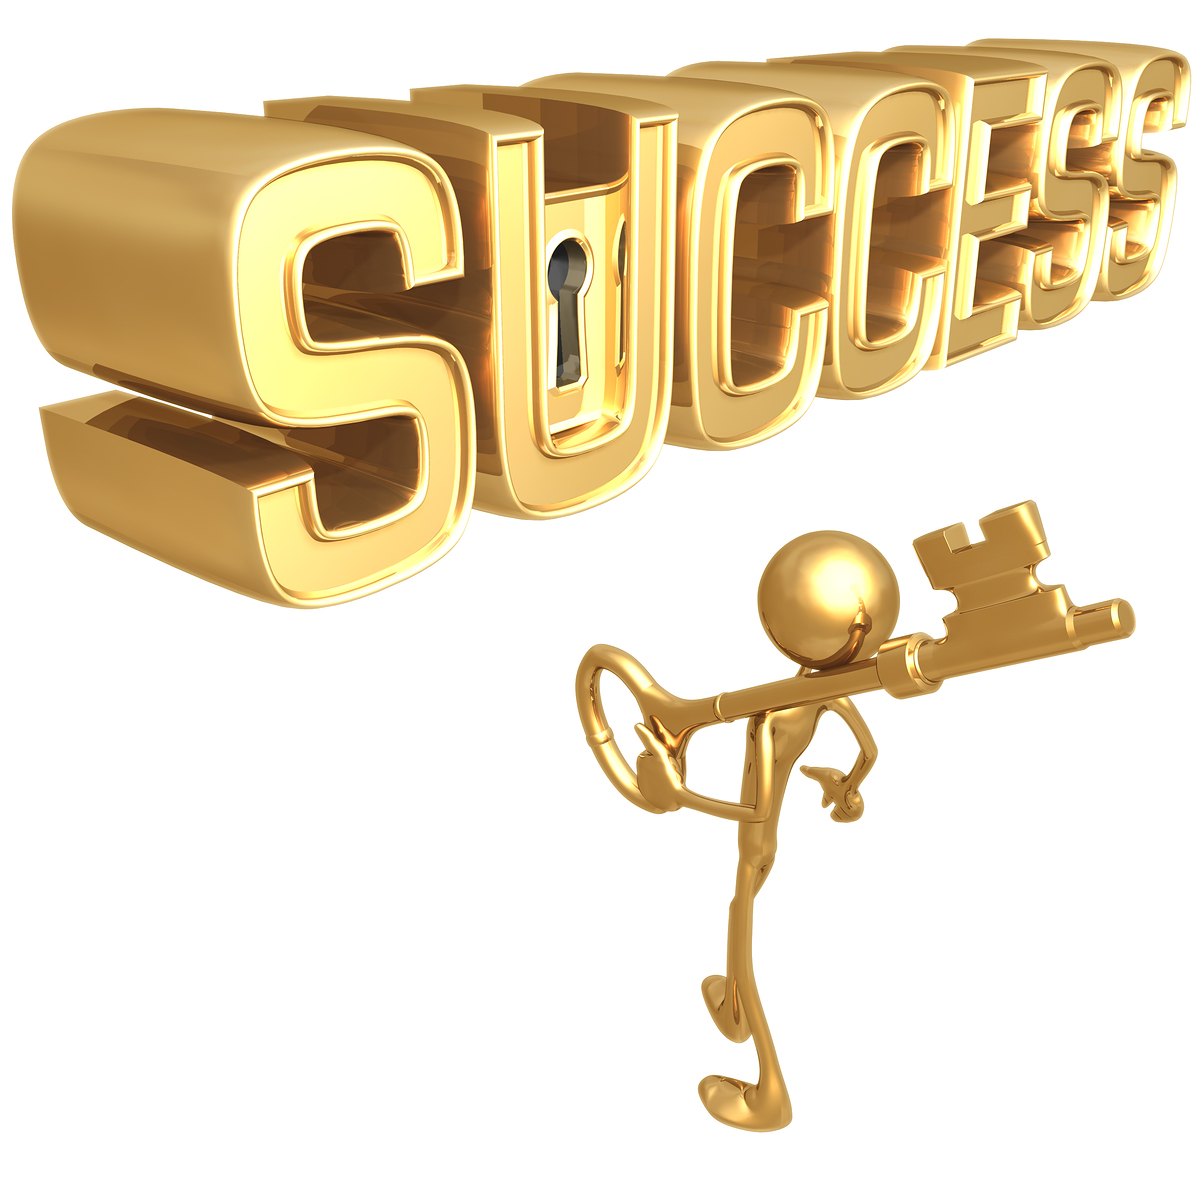 http://4.bp.blogspot.com/_xxQq_9fIjKo/TH0H0C5M9zI/AAAAAAAAAO8/1qFAwAQETkA/s1600/key-to-success.jpg